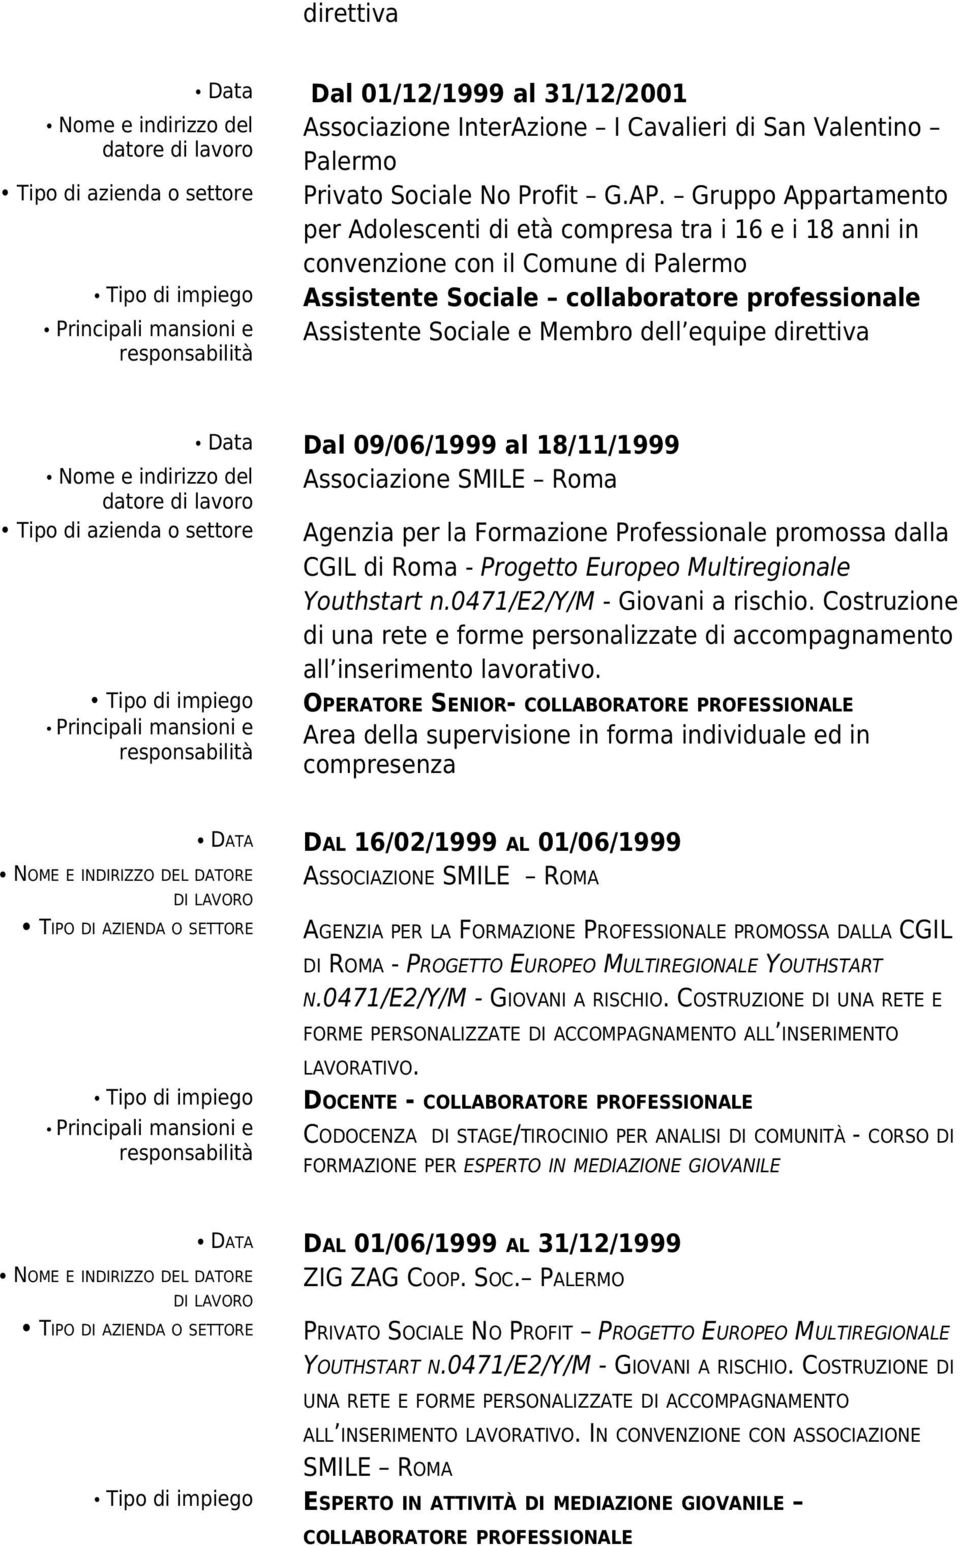 direttiva Data Dal 09/06/1999 al 18/11/1999 Nome e indirizzo del Associazione SMILE Roma Tipo di azienda o settore Agenzia per la Formazione Professionale promossa dalla CGIL di Roma - Progetto